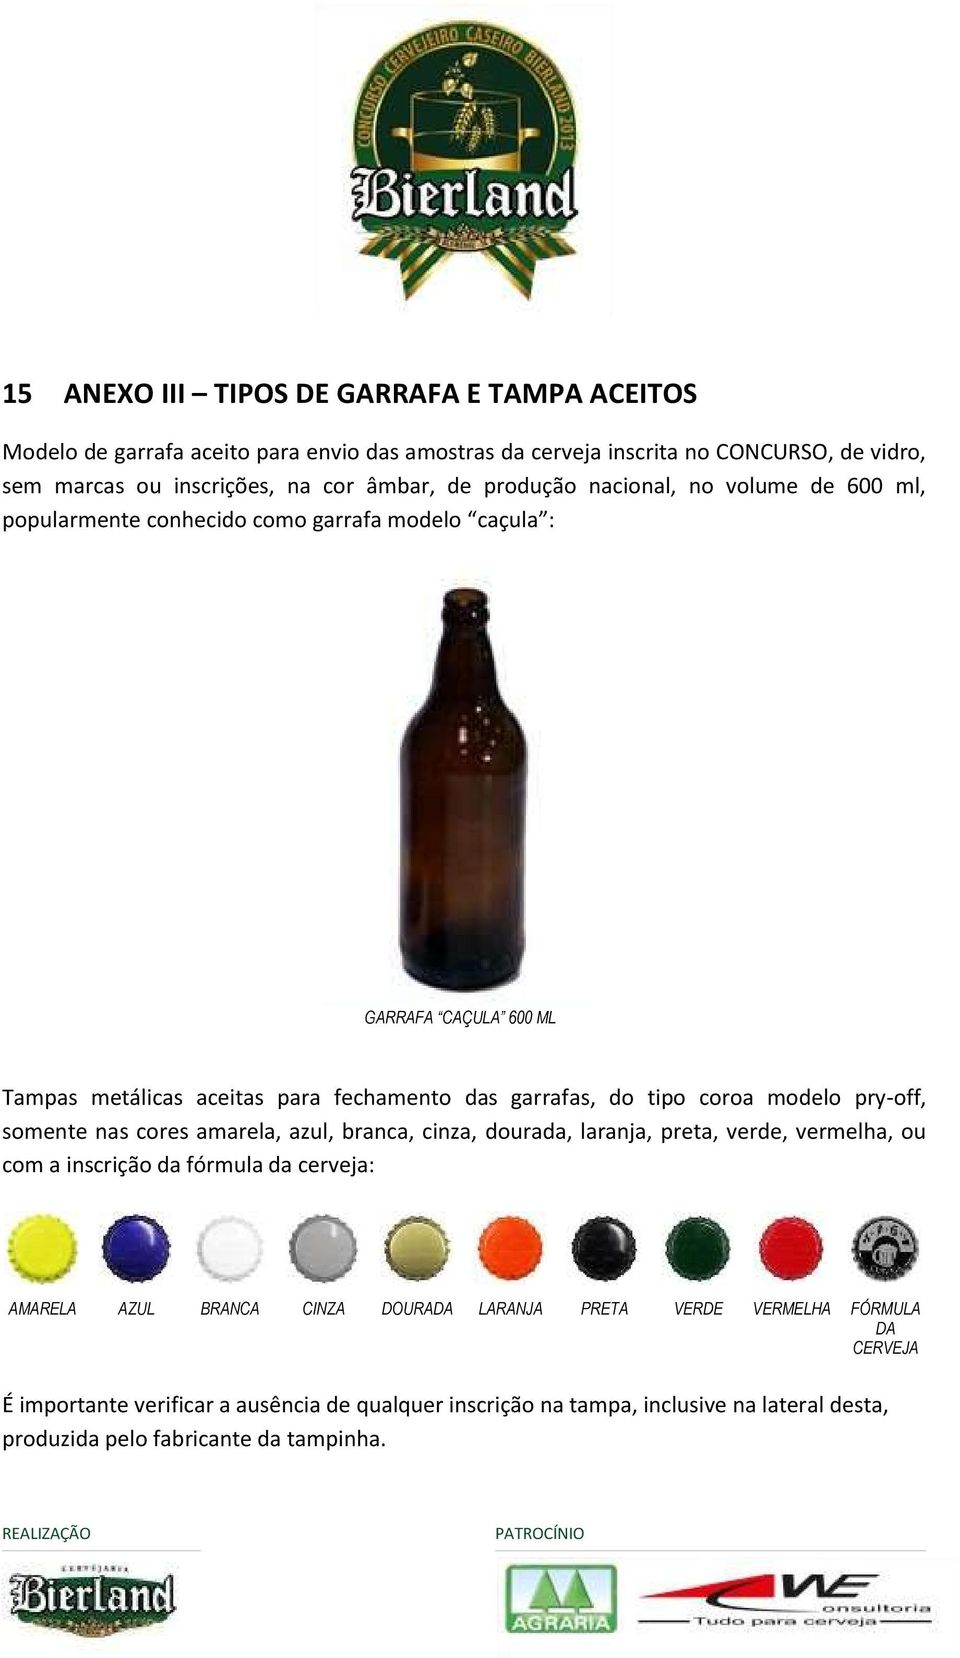 somente nas cores amarela, azul, branca, cinza, dourada, laranja, preta, verde, vermelha, ou com a inscrição da fórmula da cerveja: AMARELA AZUL BRANCA CINZA DOURADA